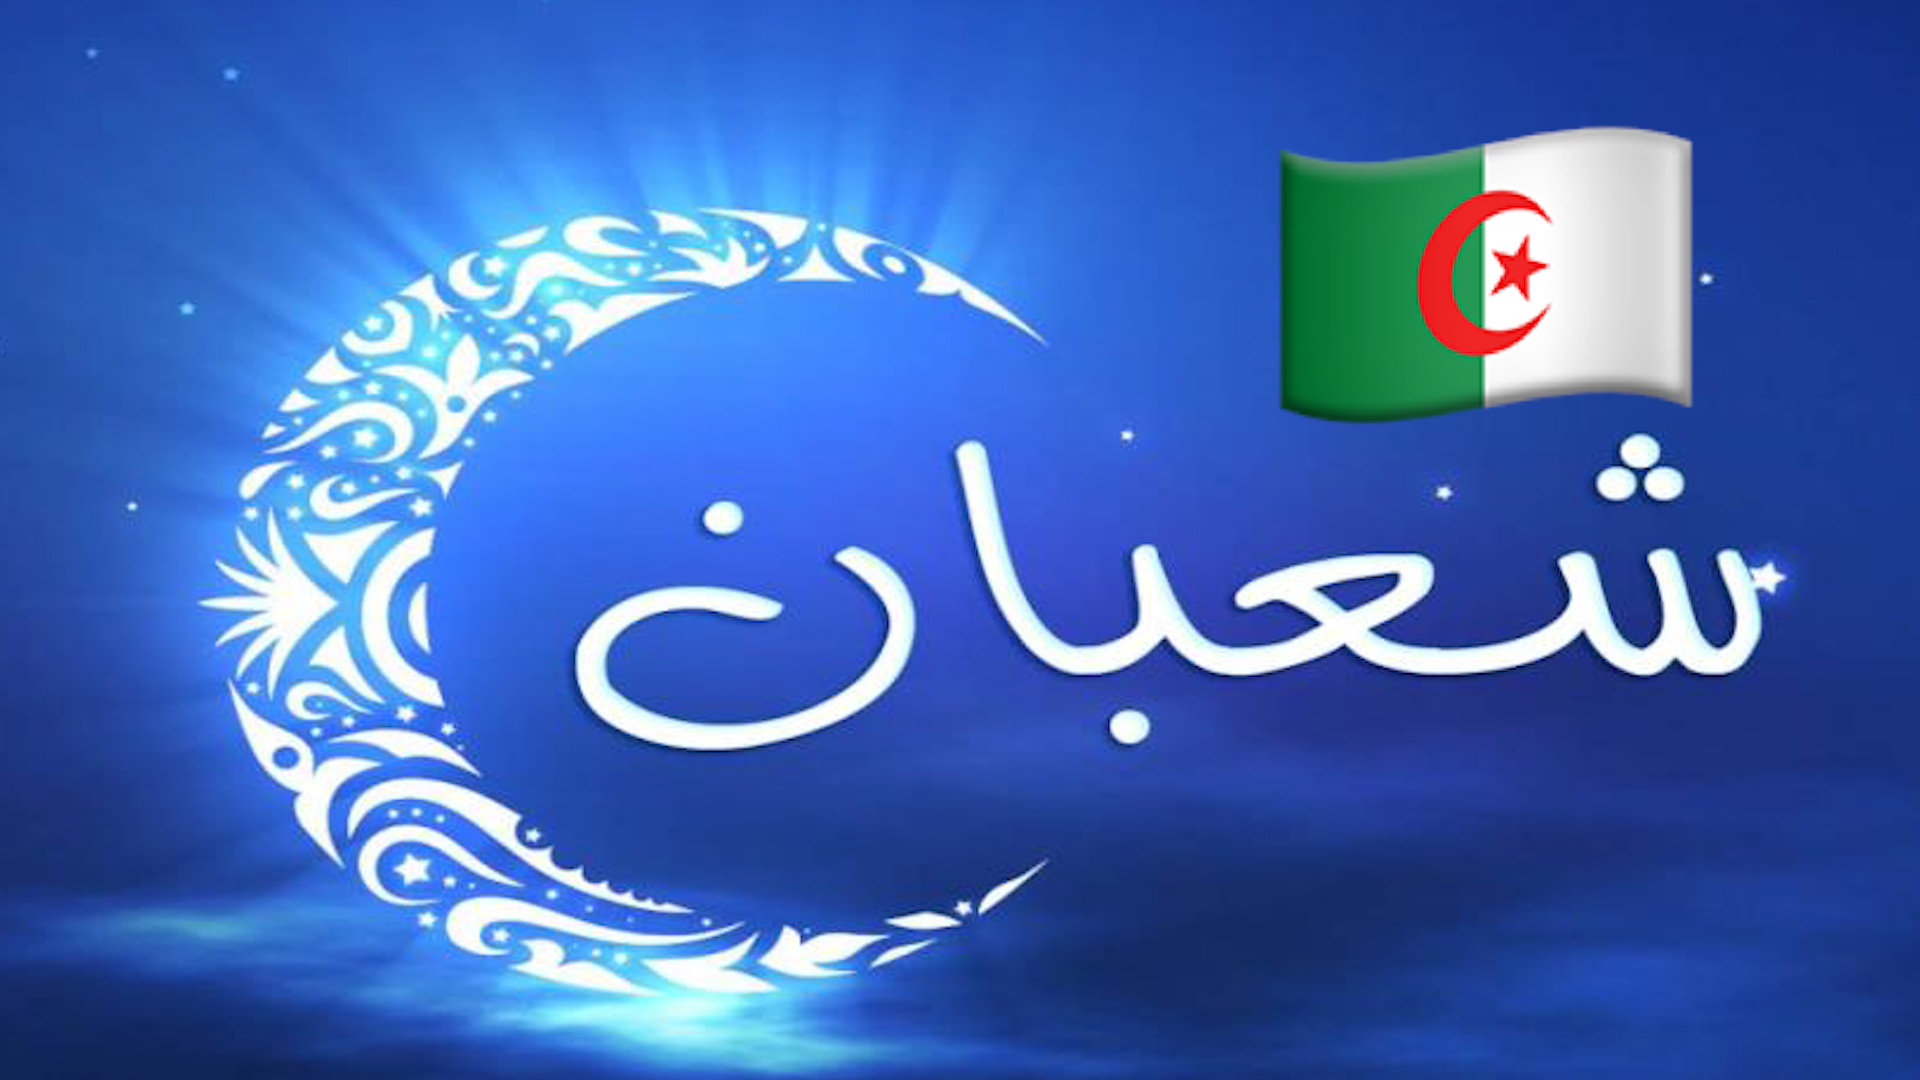 وزارة الشؤون الدينية: غرة شعبان غدا الاثنين وليلة ترقب هلال رمضان يوم 12 أبريل القادم